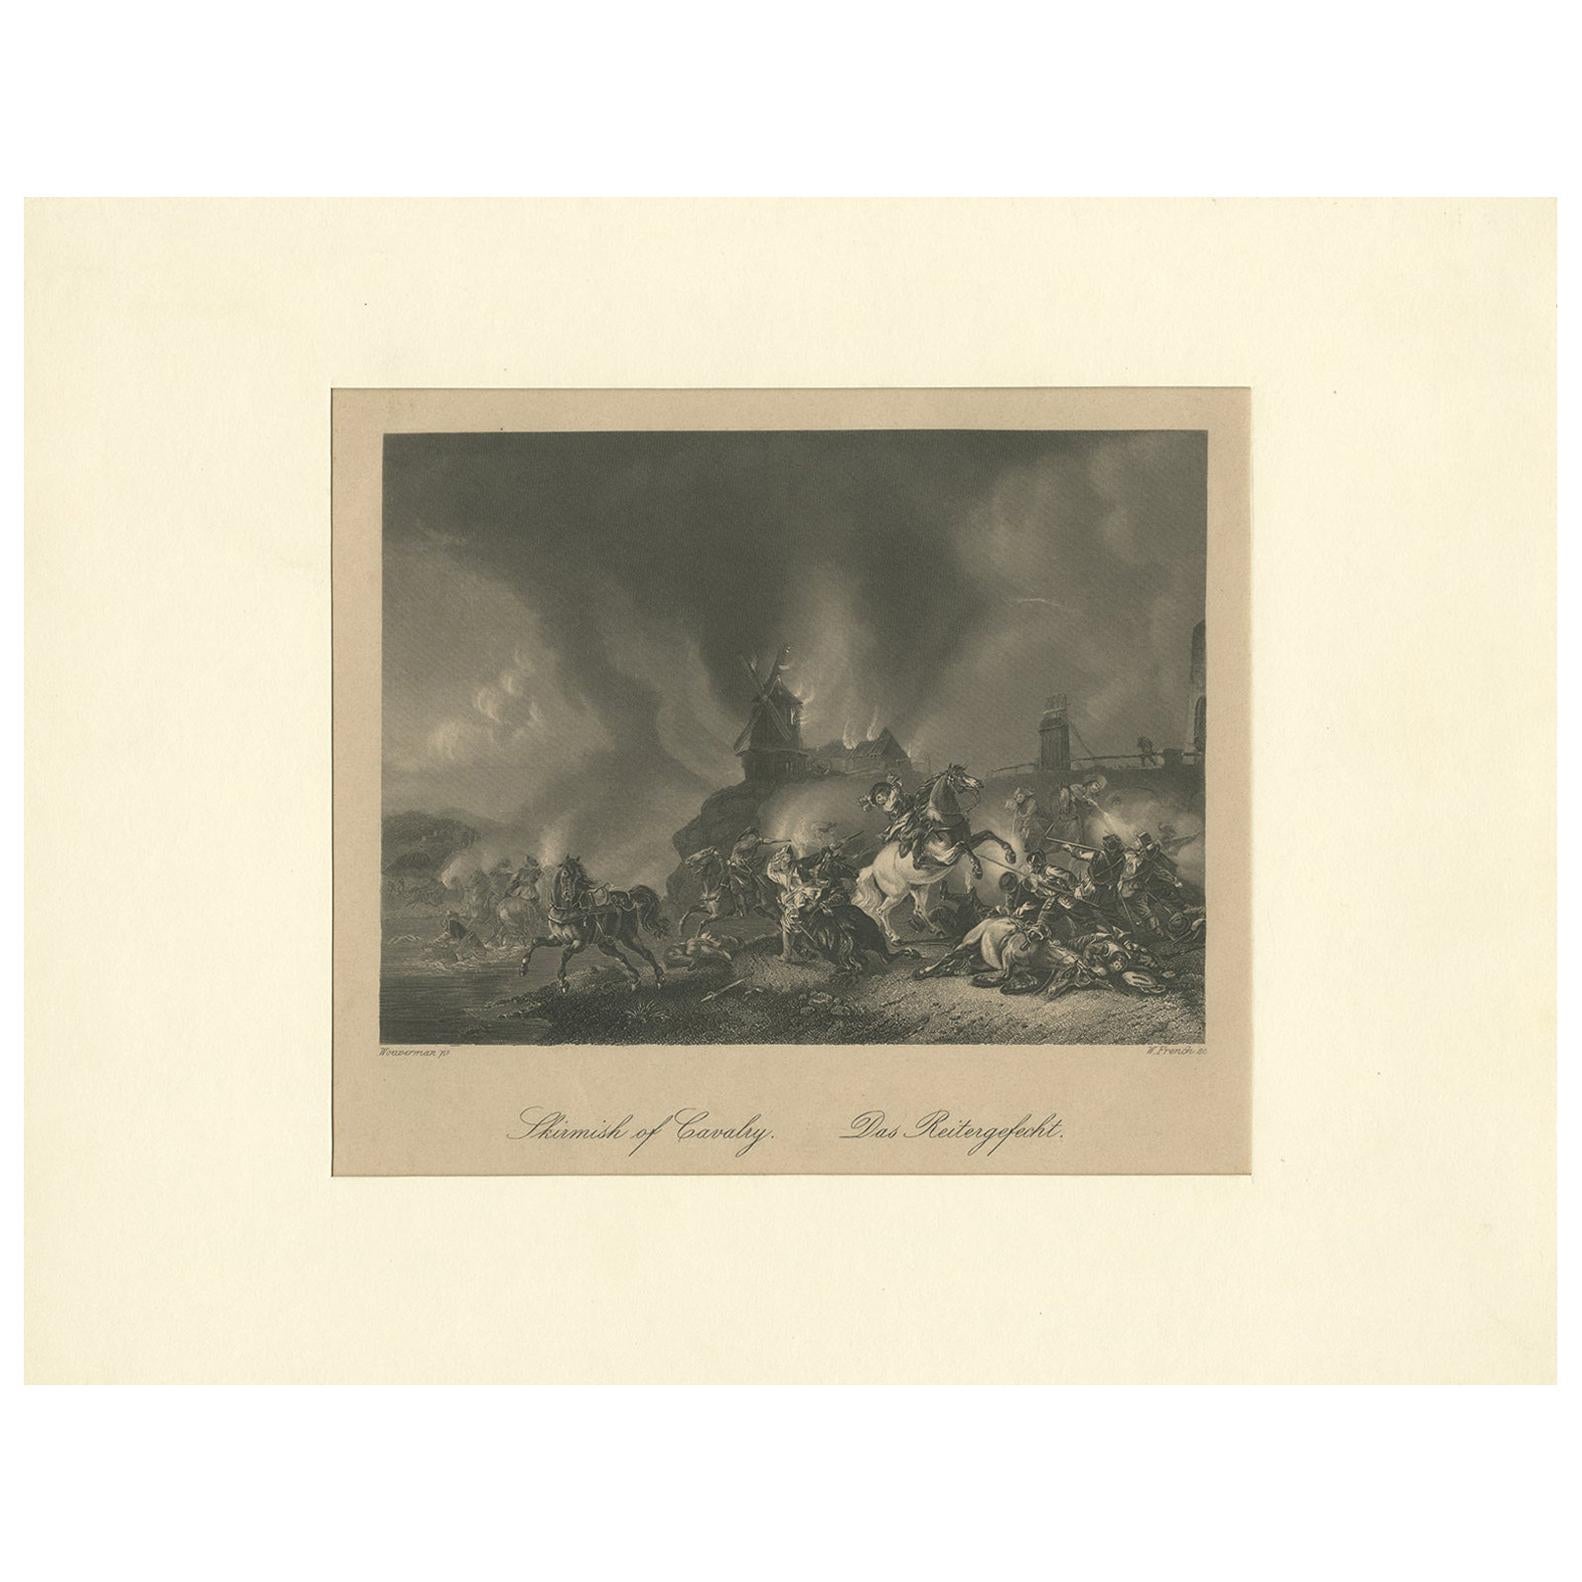 Impression ancienne d'une scène de bataille de cavalerie par Heawood, datant d'environ 1860